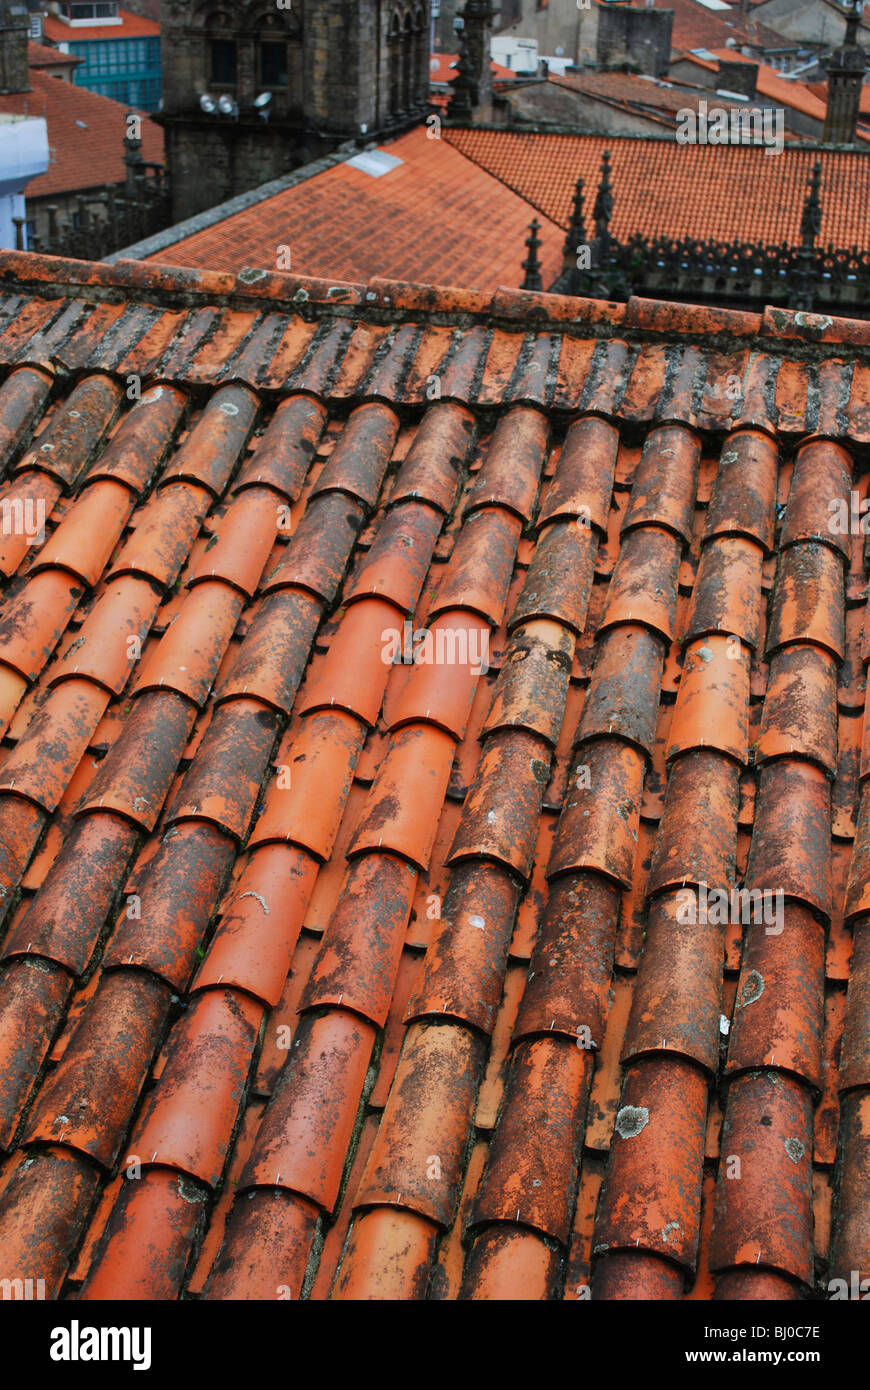 Les toits en tuiles rouges à Santiago de Compostela, Espagne Banque D'Images